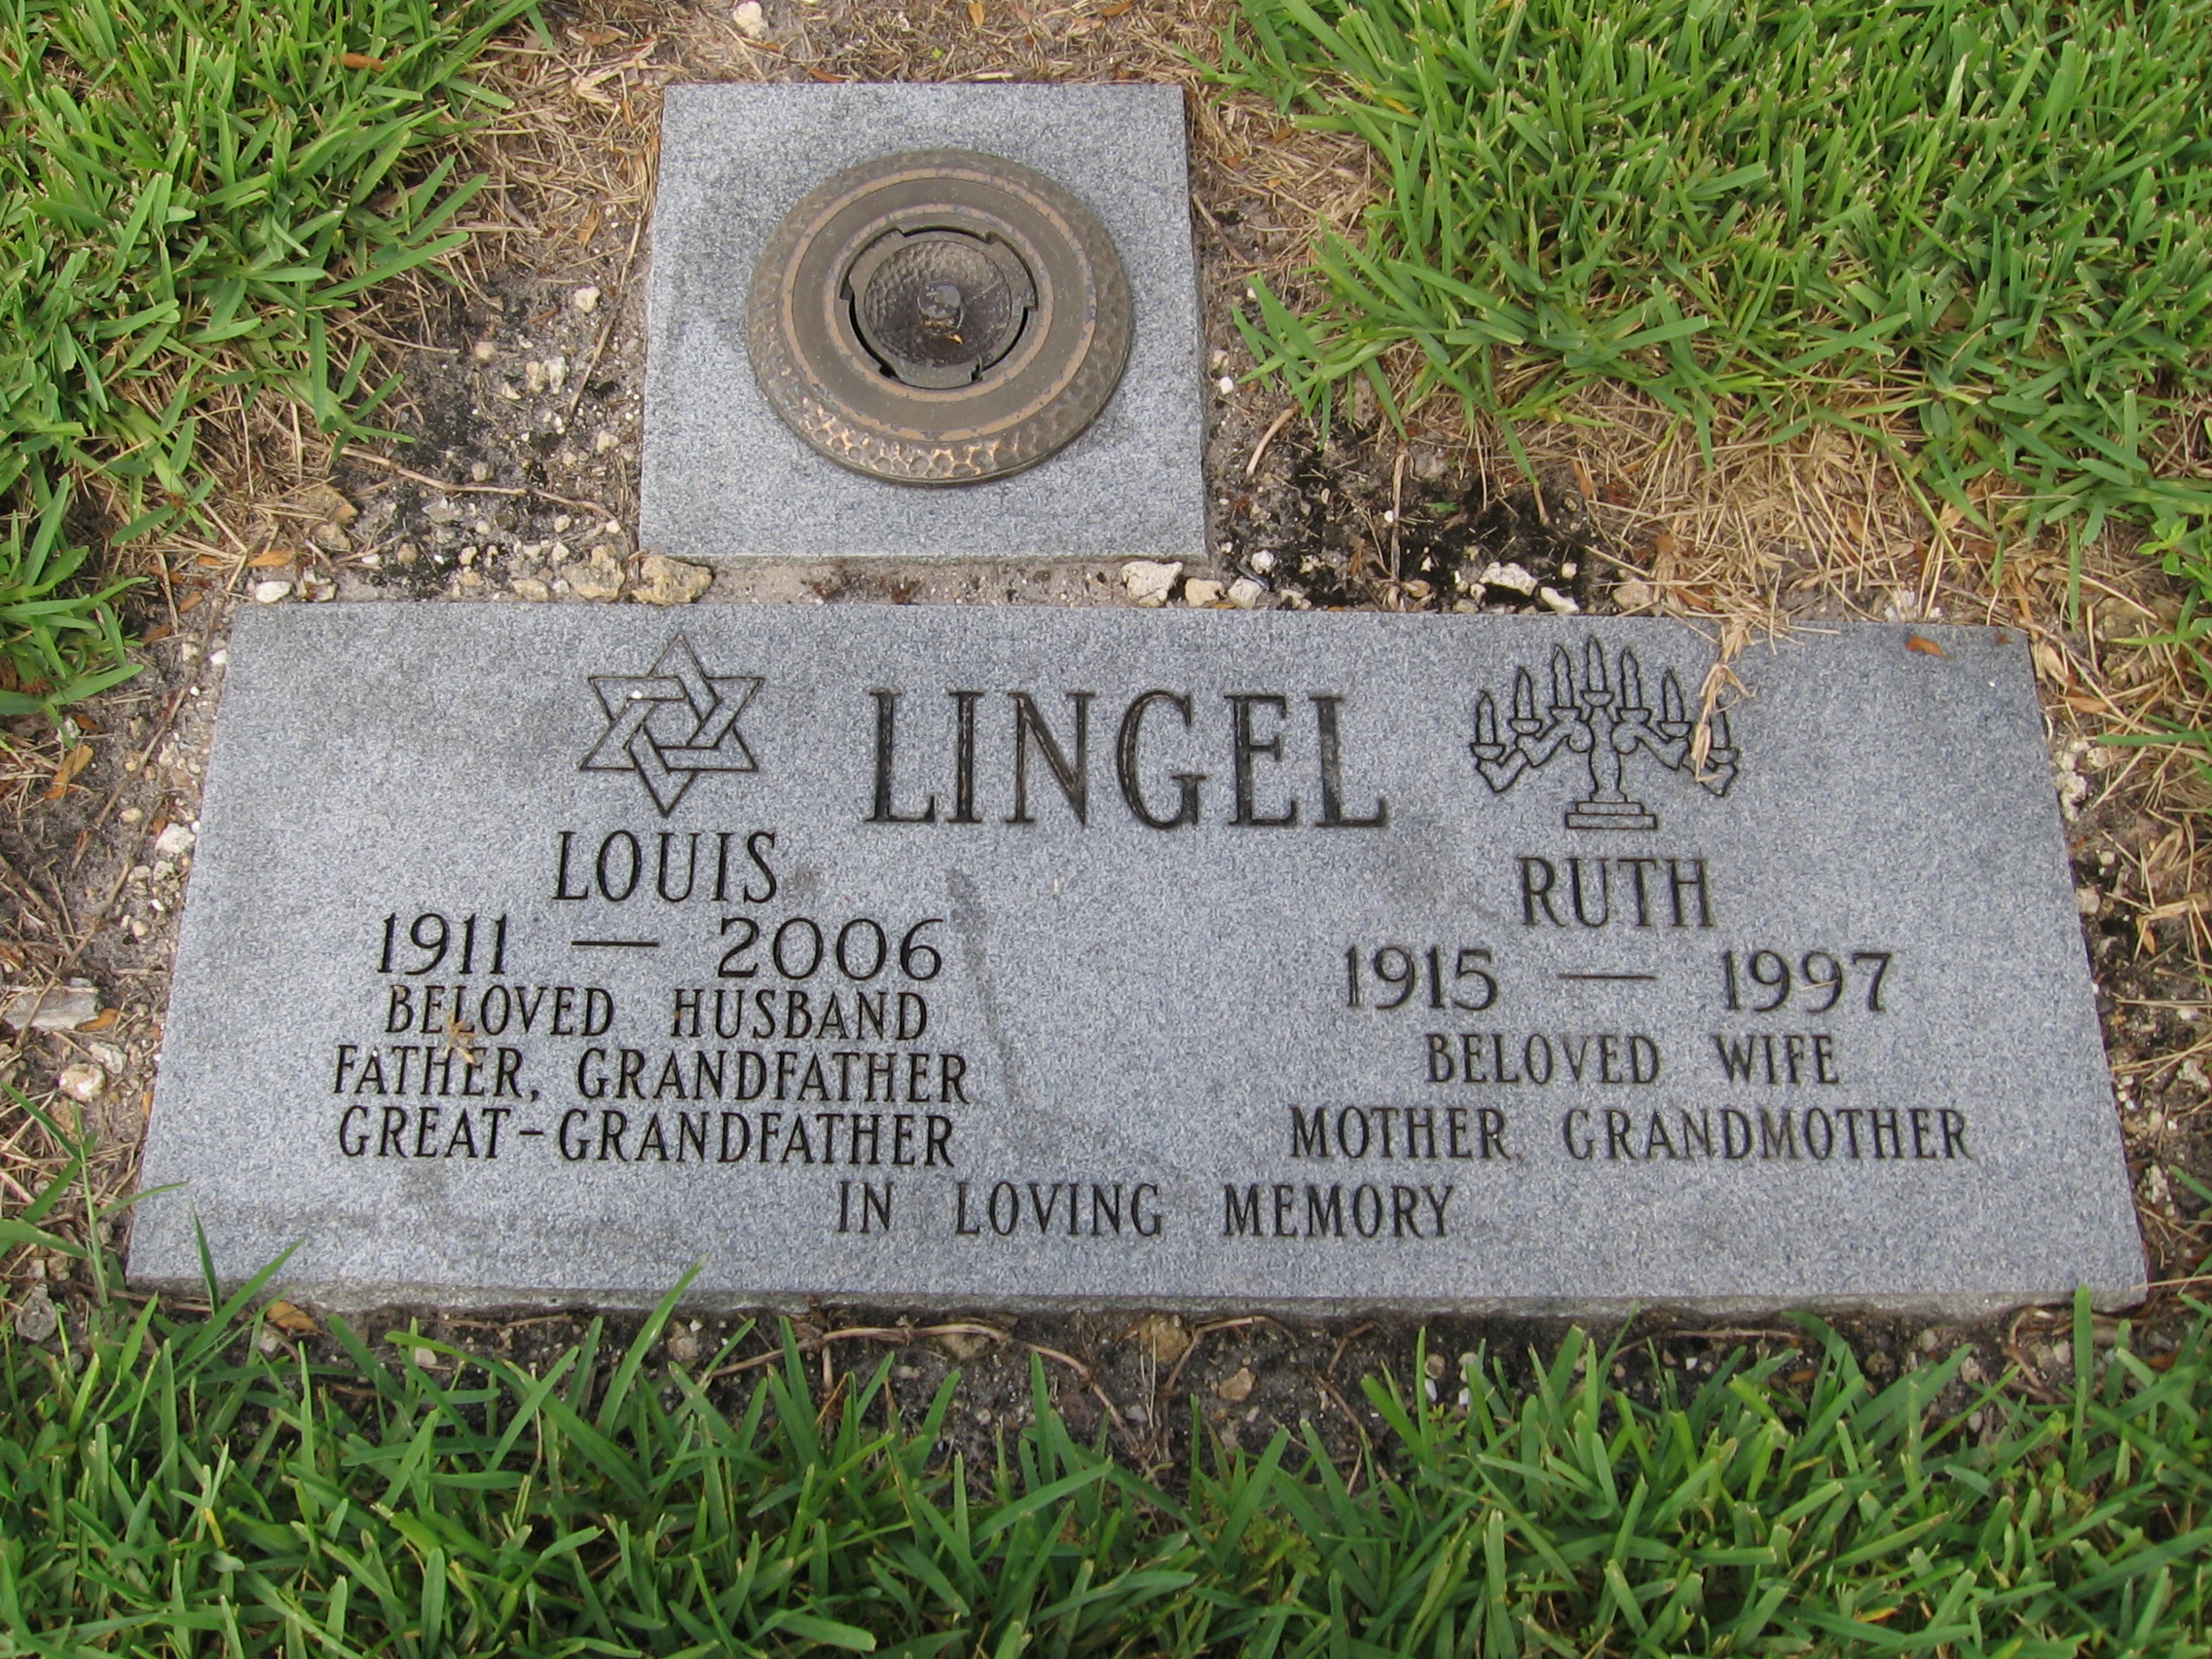 Louis Lingel